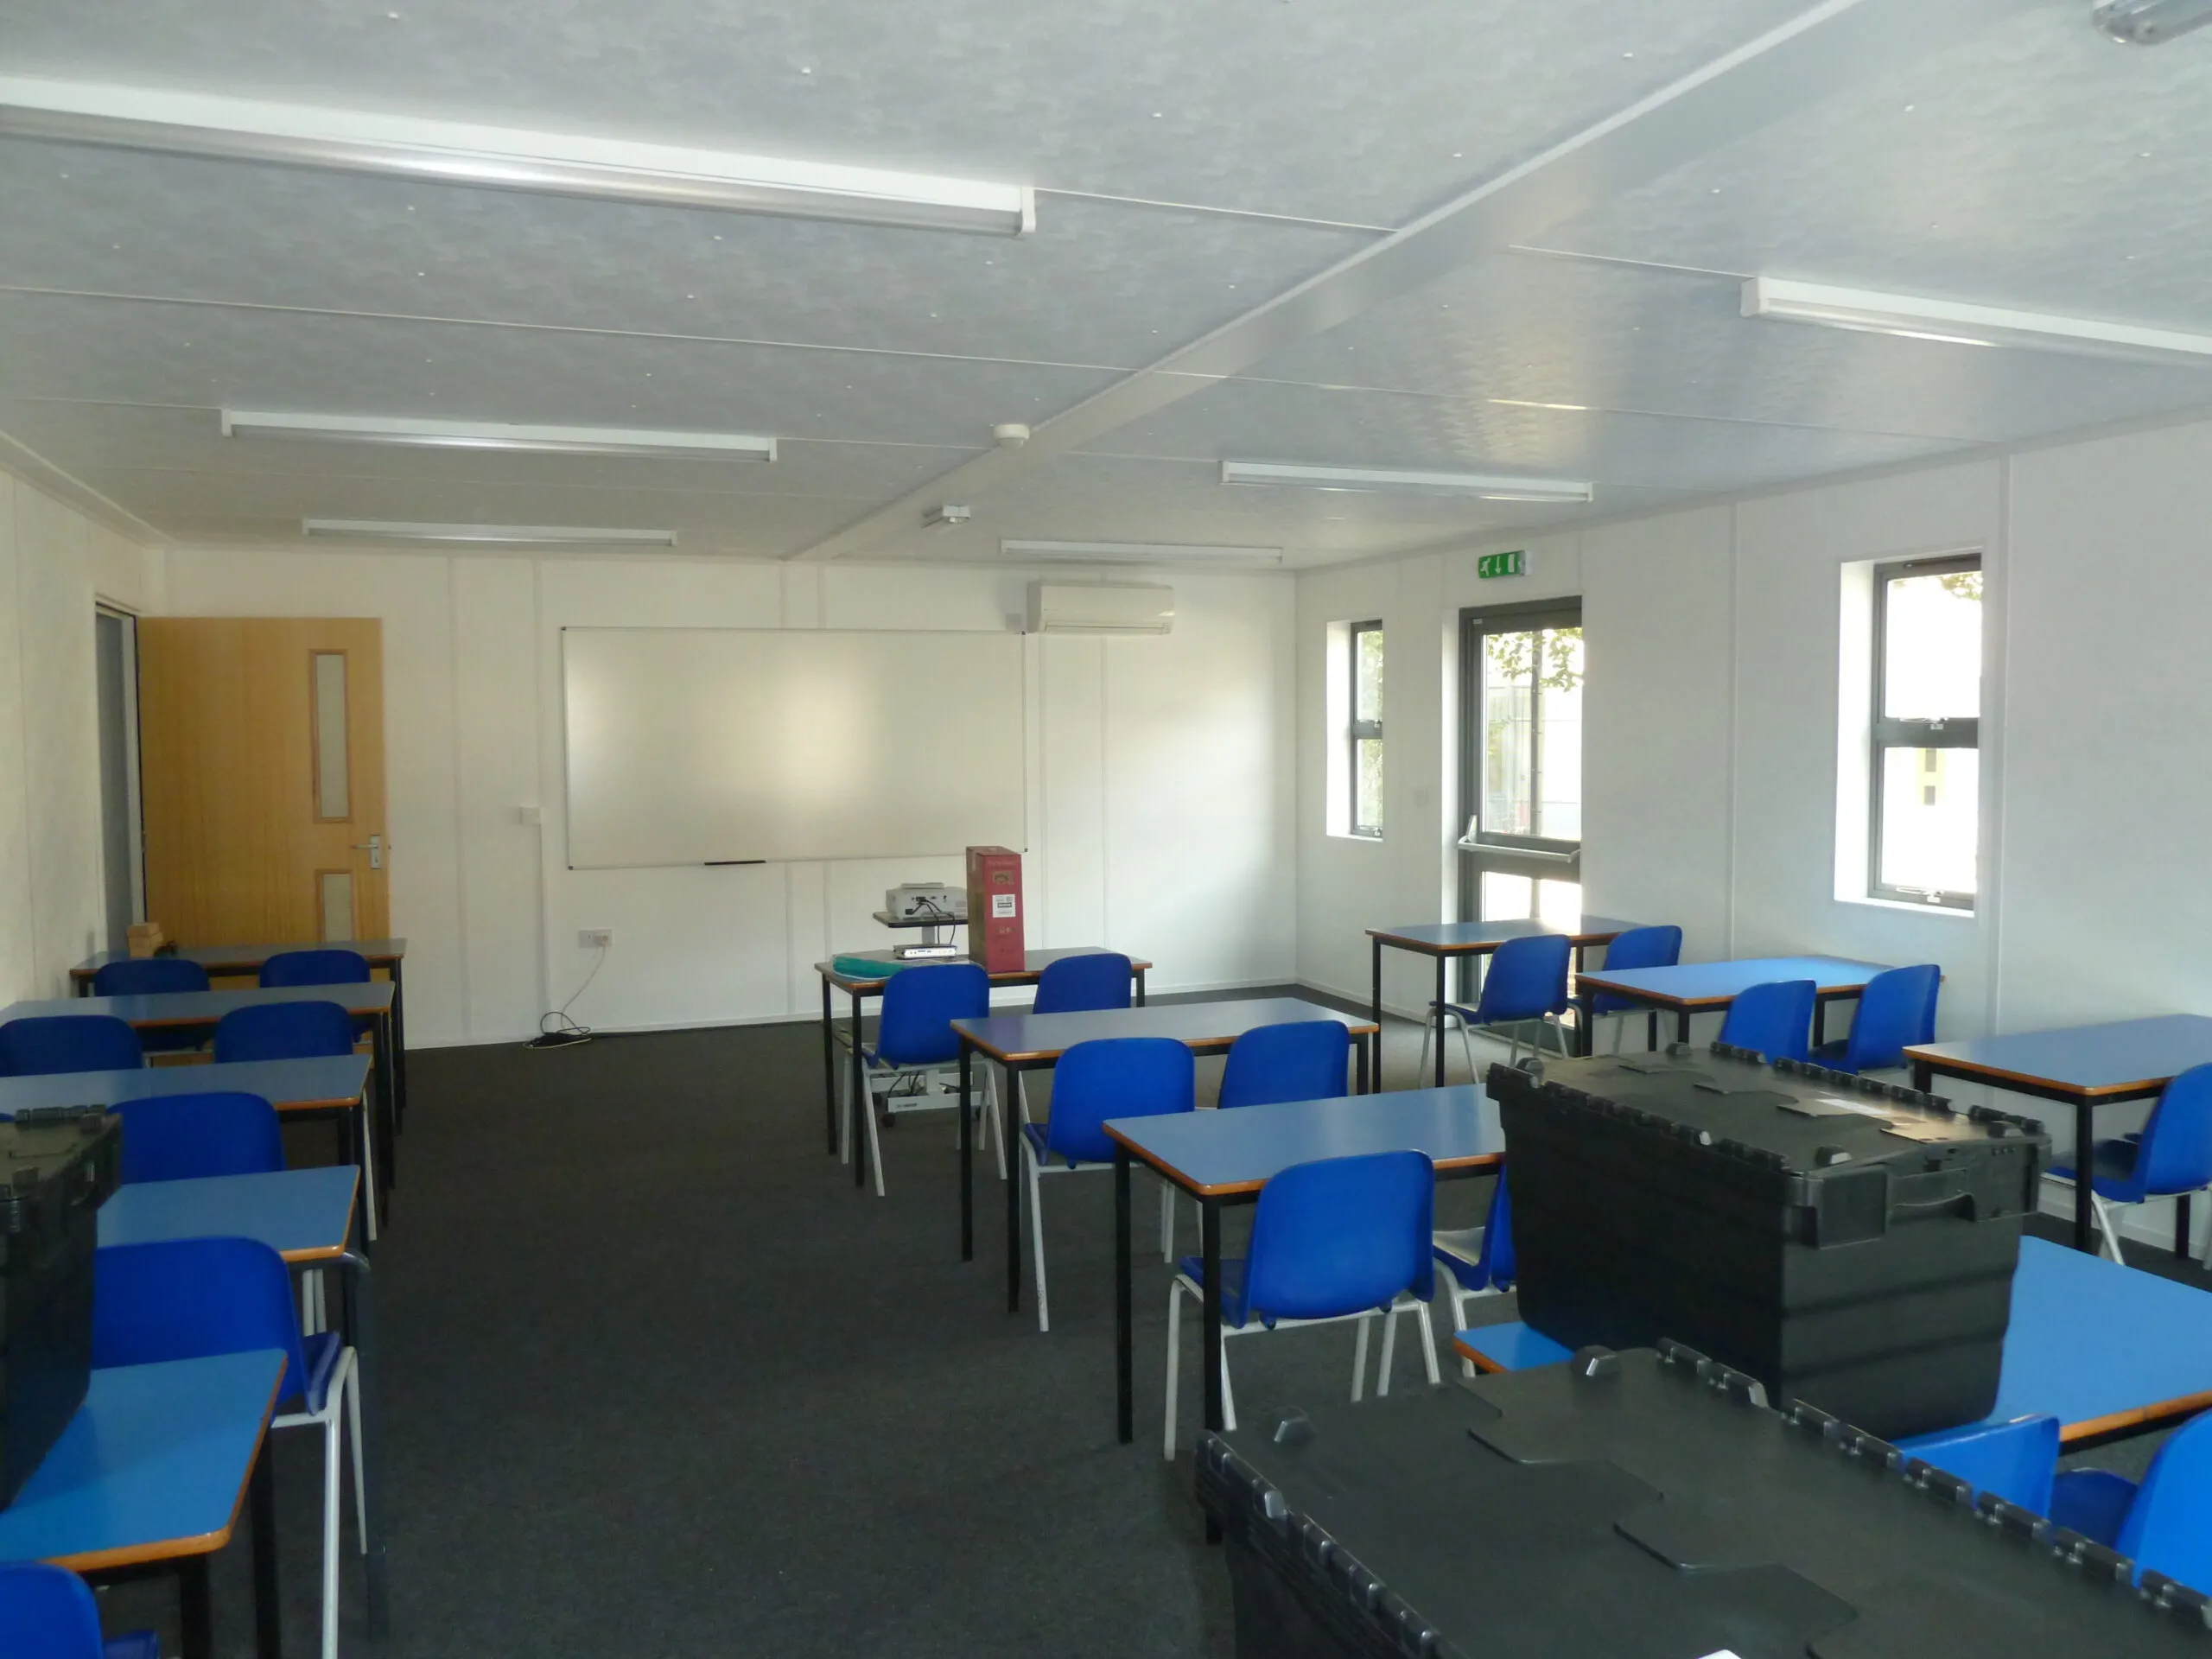 Inside a modular classroom